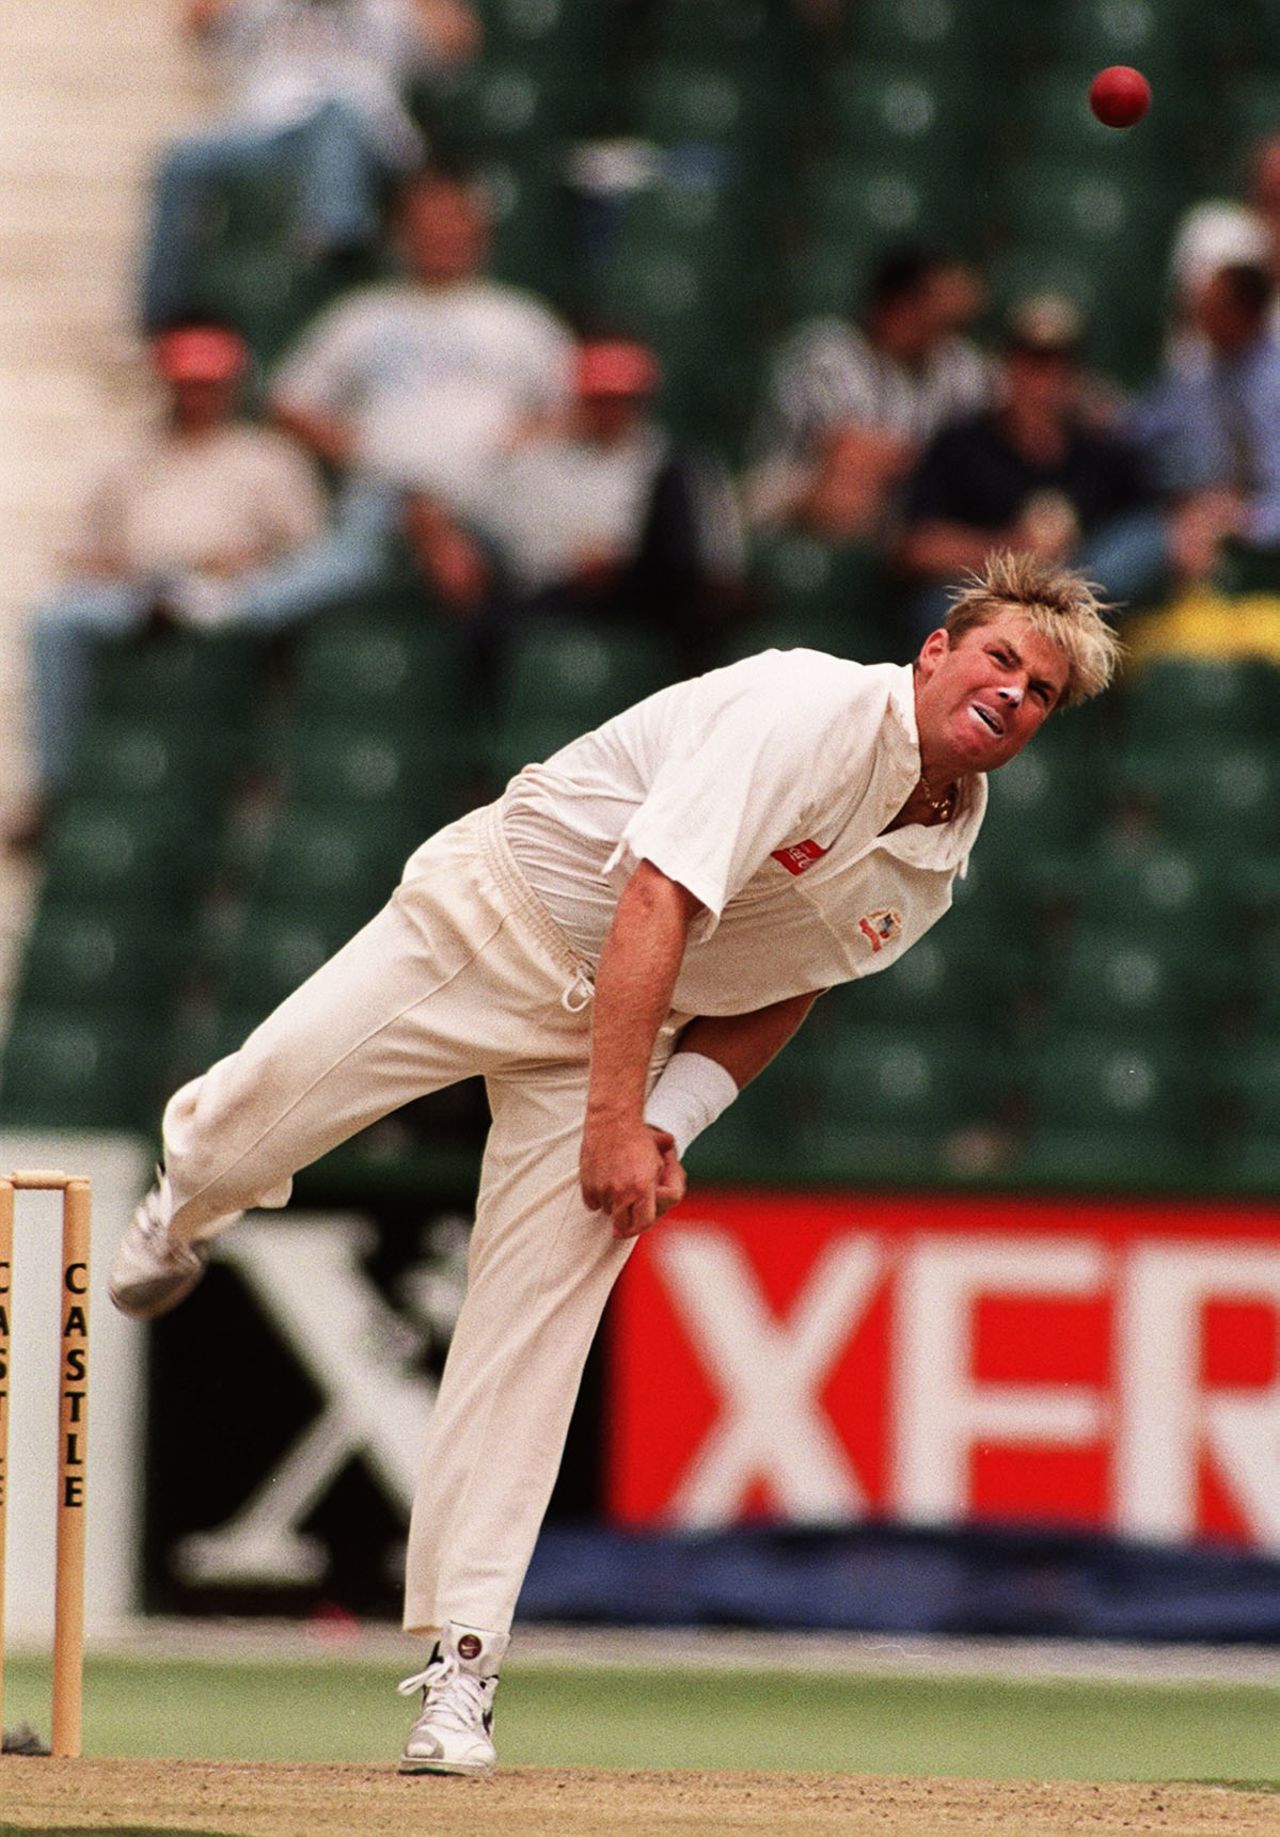 Shane Warne bowls, South Africa vs Australia, 1st Test, Johannesburg, 1st day, February 28, 1997